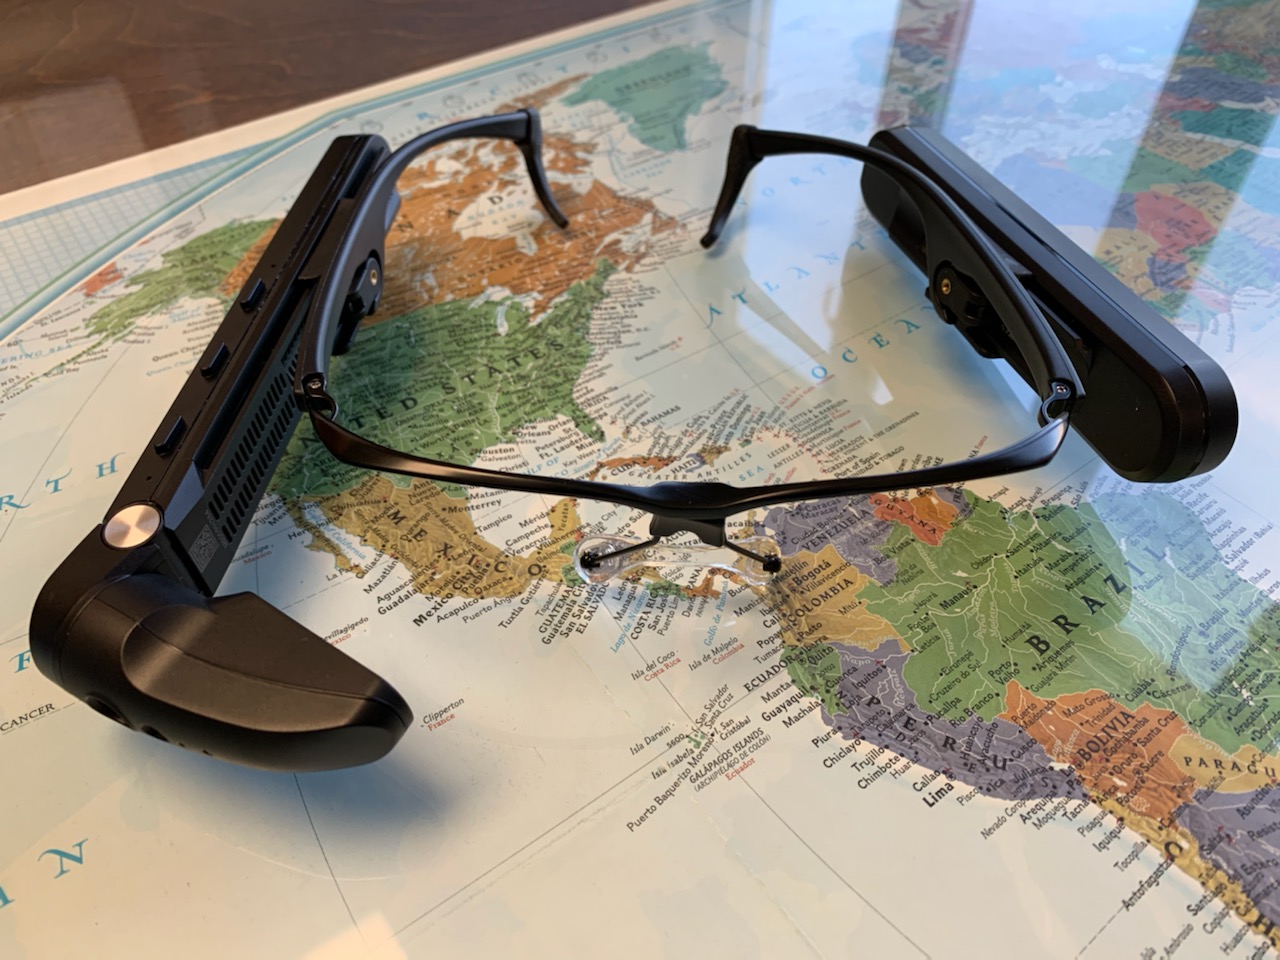 Vuzix M400 smart glasses